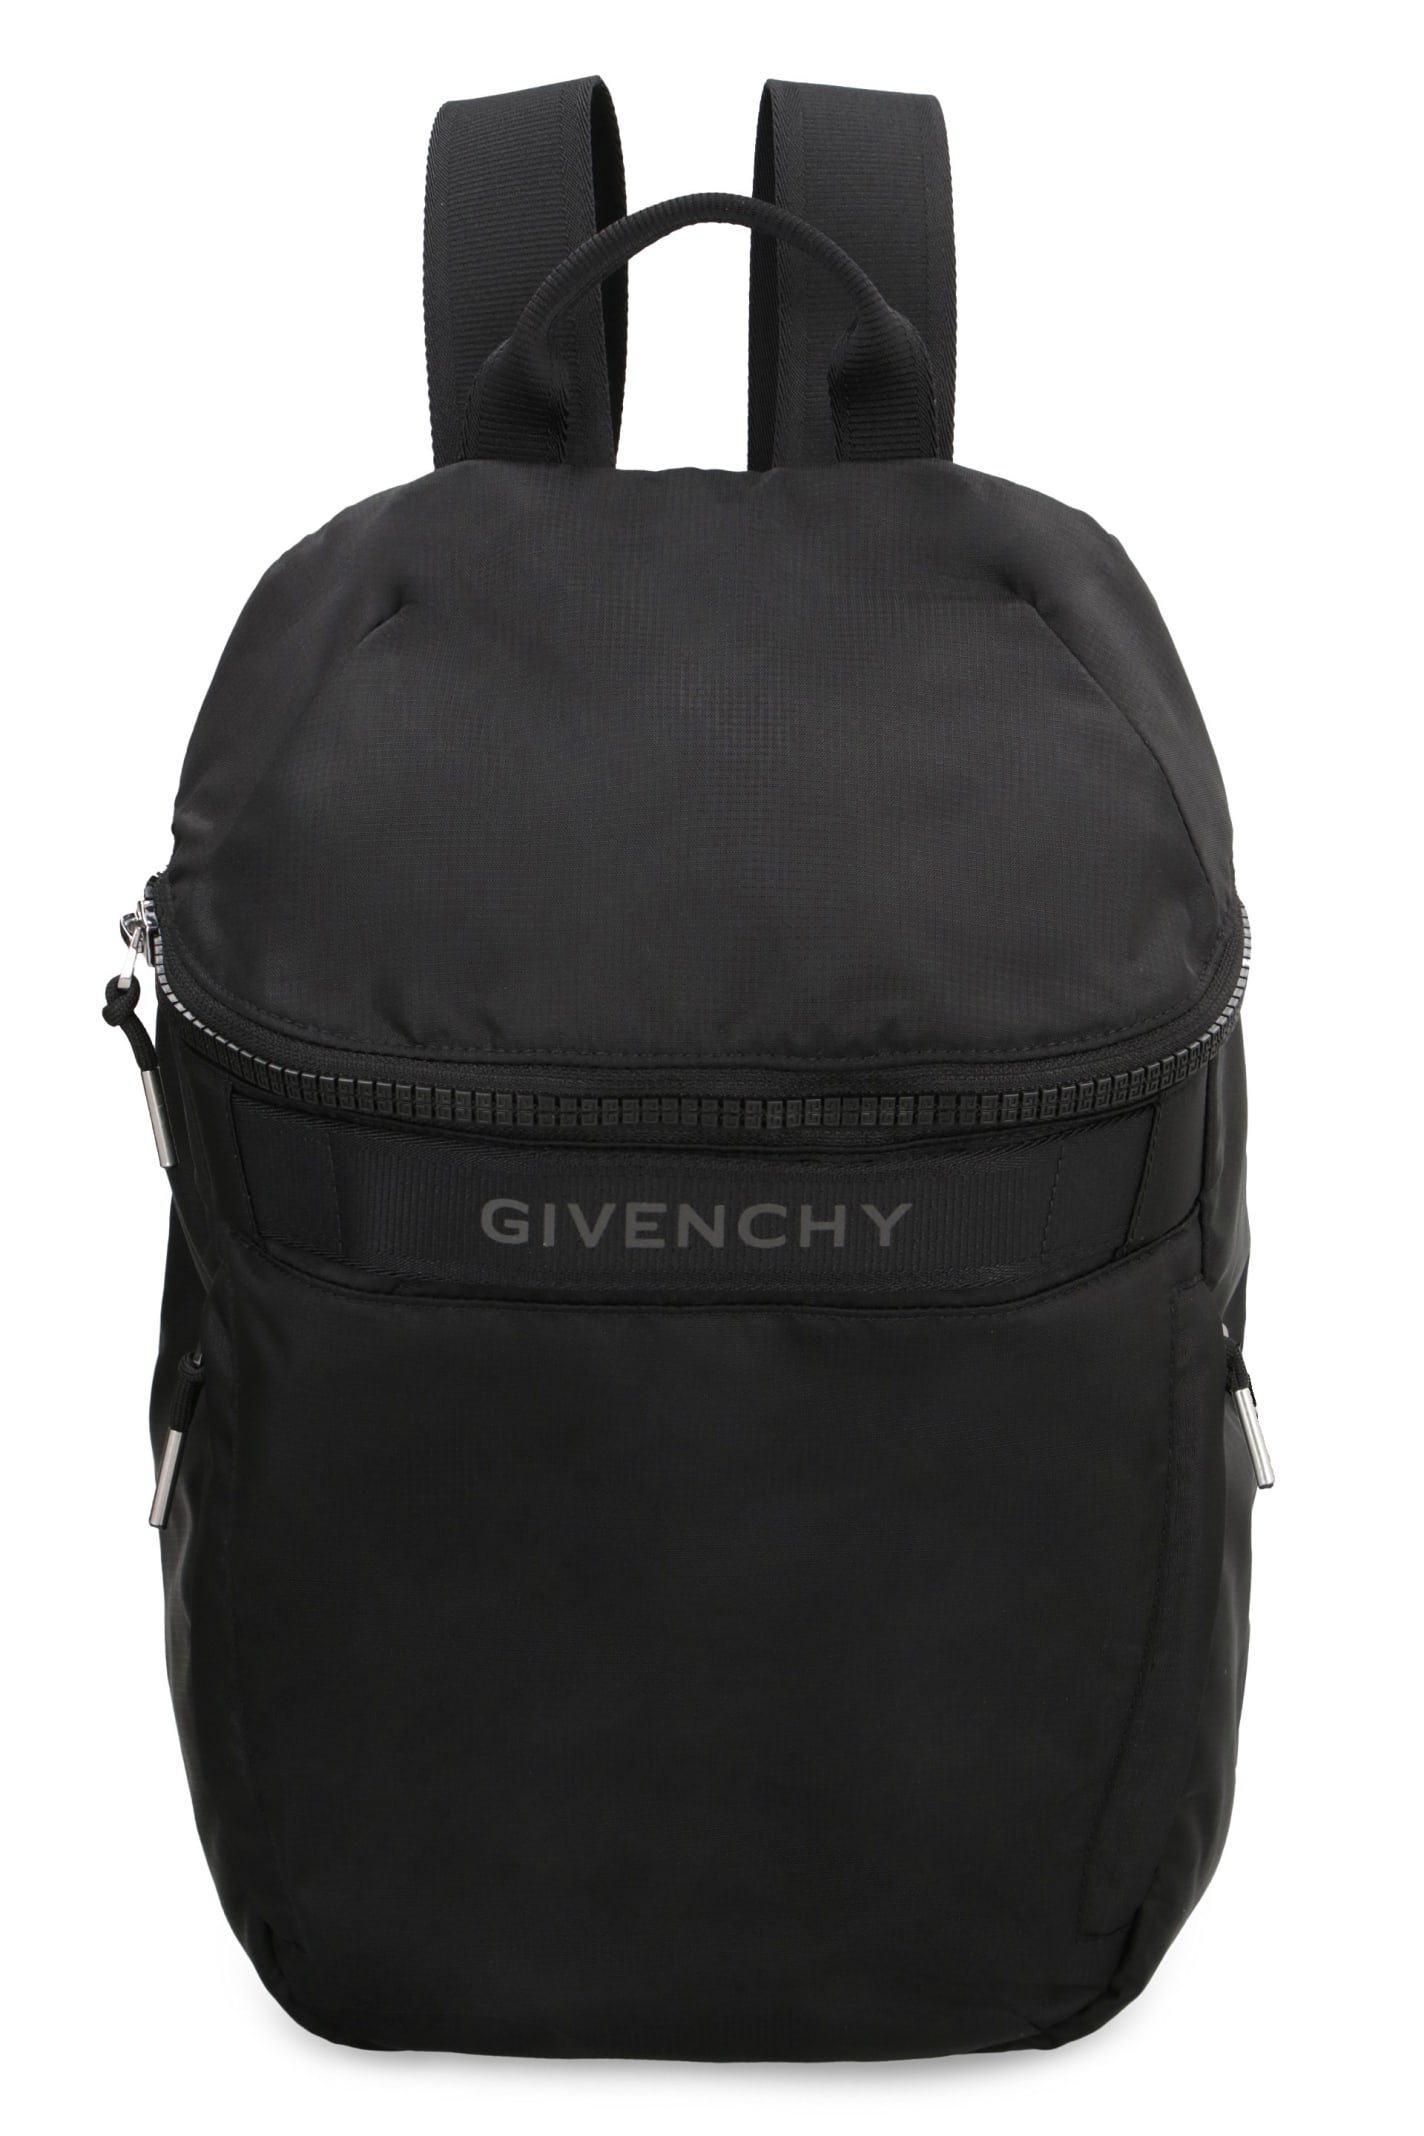 G-trek Backpack In Black Nylon